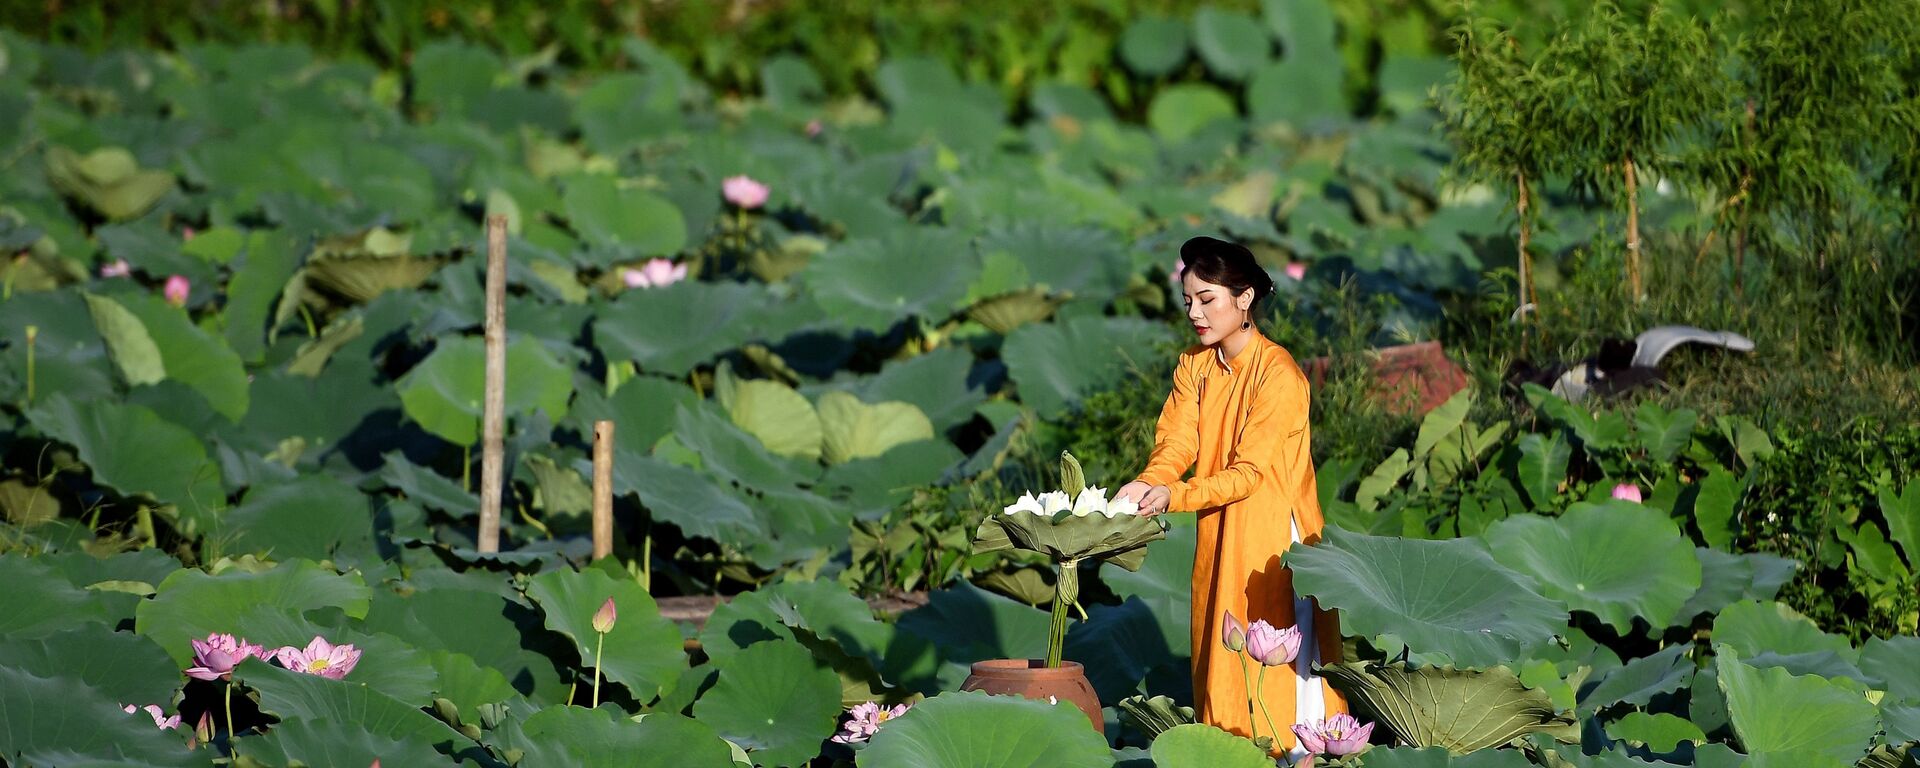 Cô gái trong buổi chụp ảnh ở ao sen Hồ Tây, Hà Nội - Sputnik Việt Nam, 1920, 15.06.2020